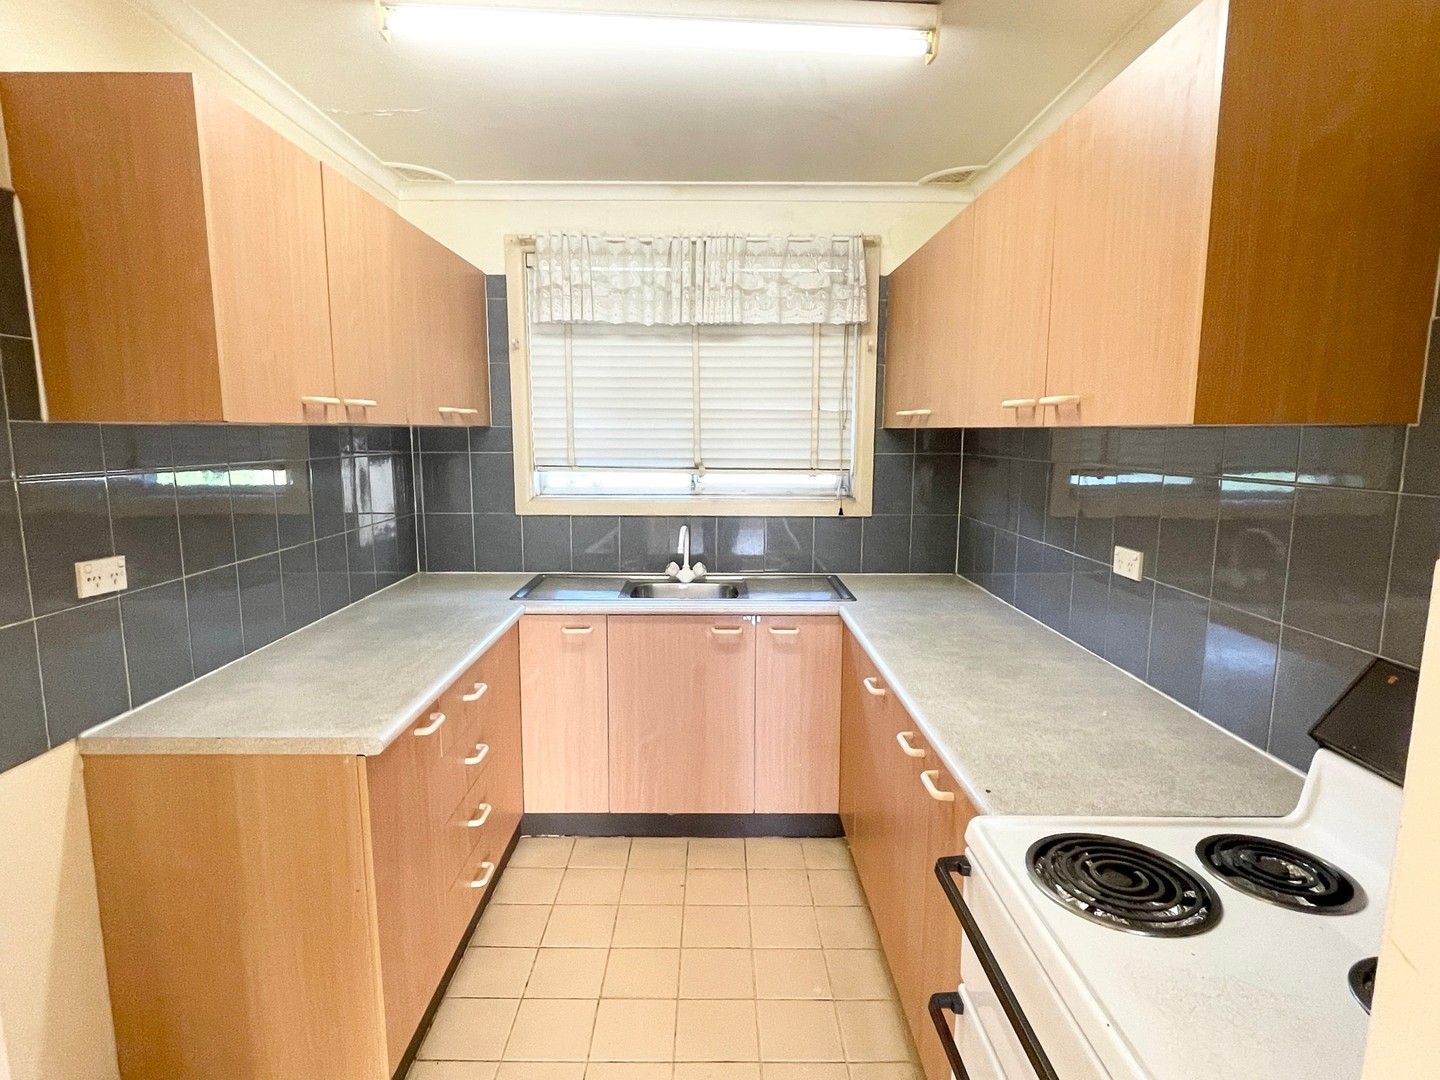 2 bedrooms Villa in 3/12-14 Ellis Street ST MARYS NSW, 2760